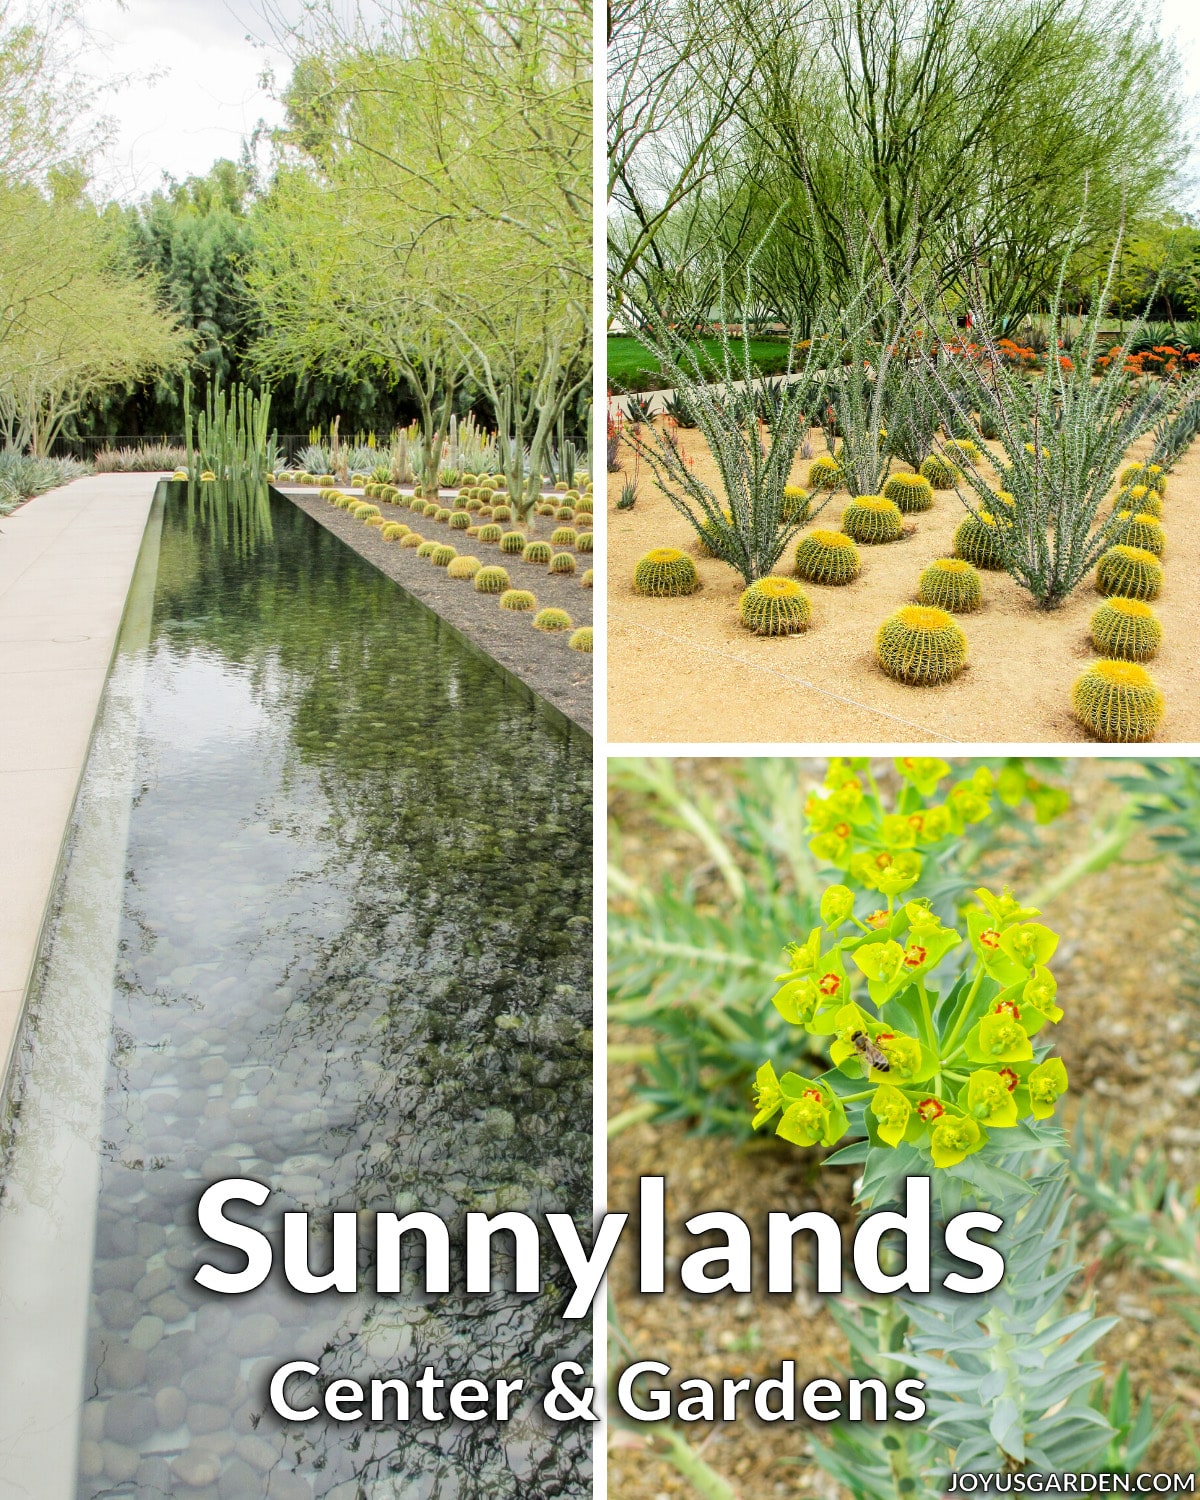  Sunnylands Center und Gärten in Palm Springs